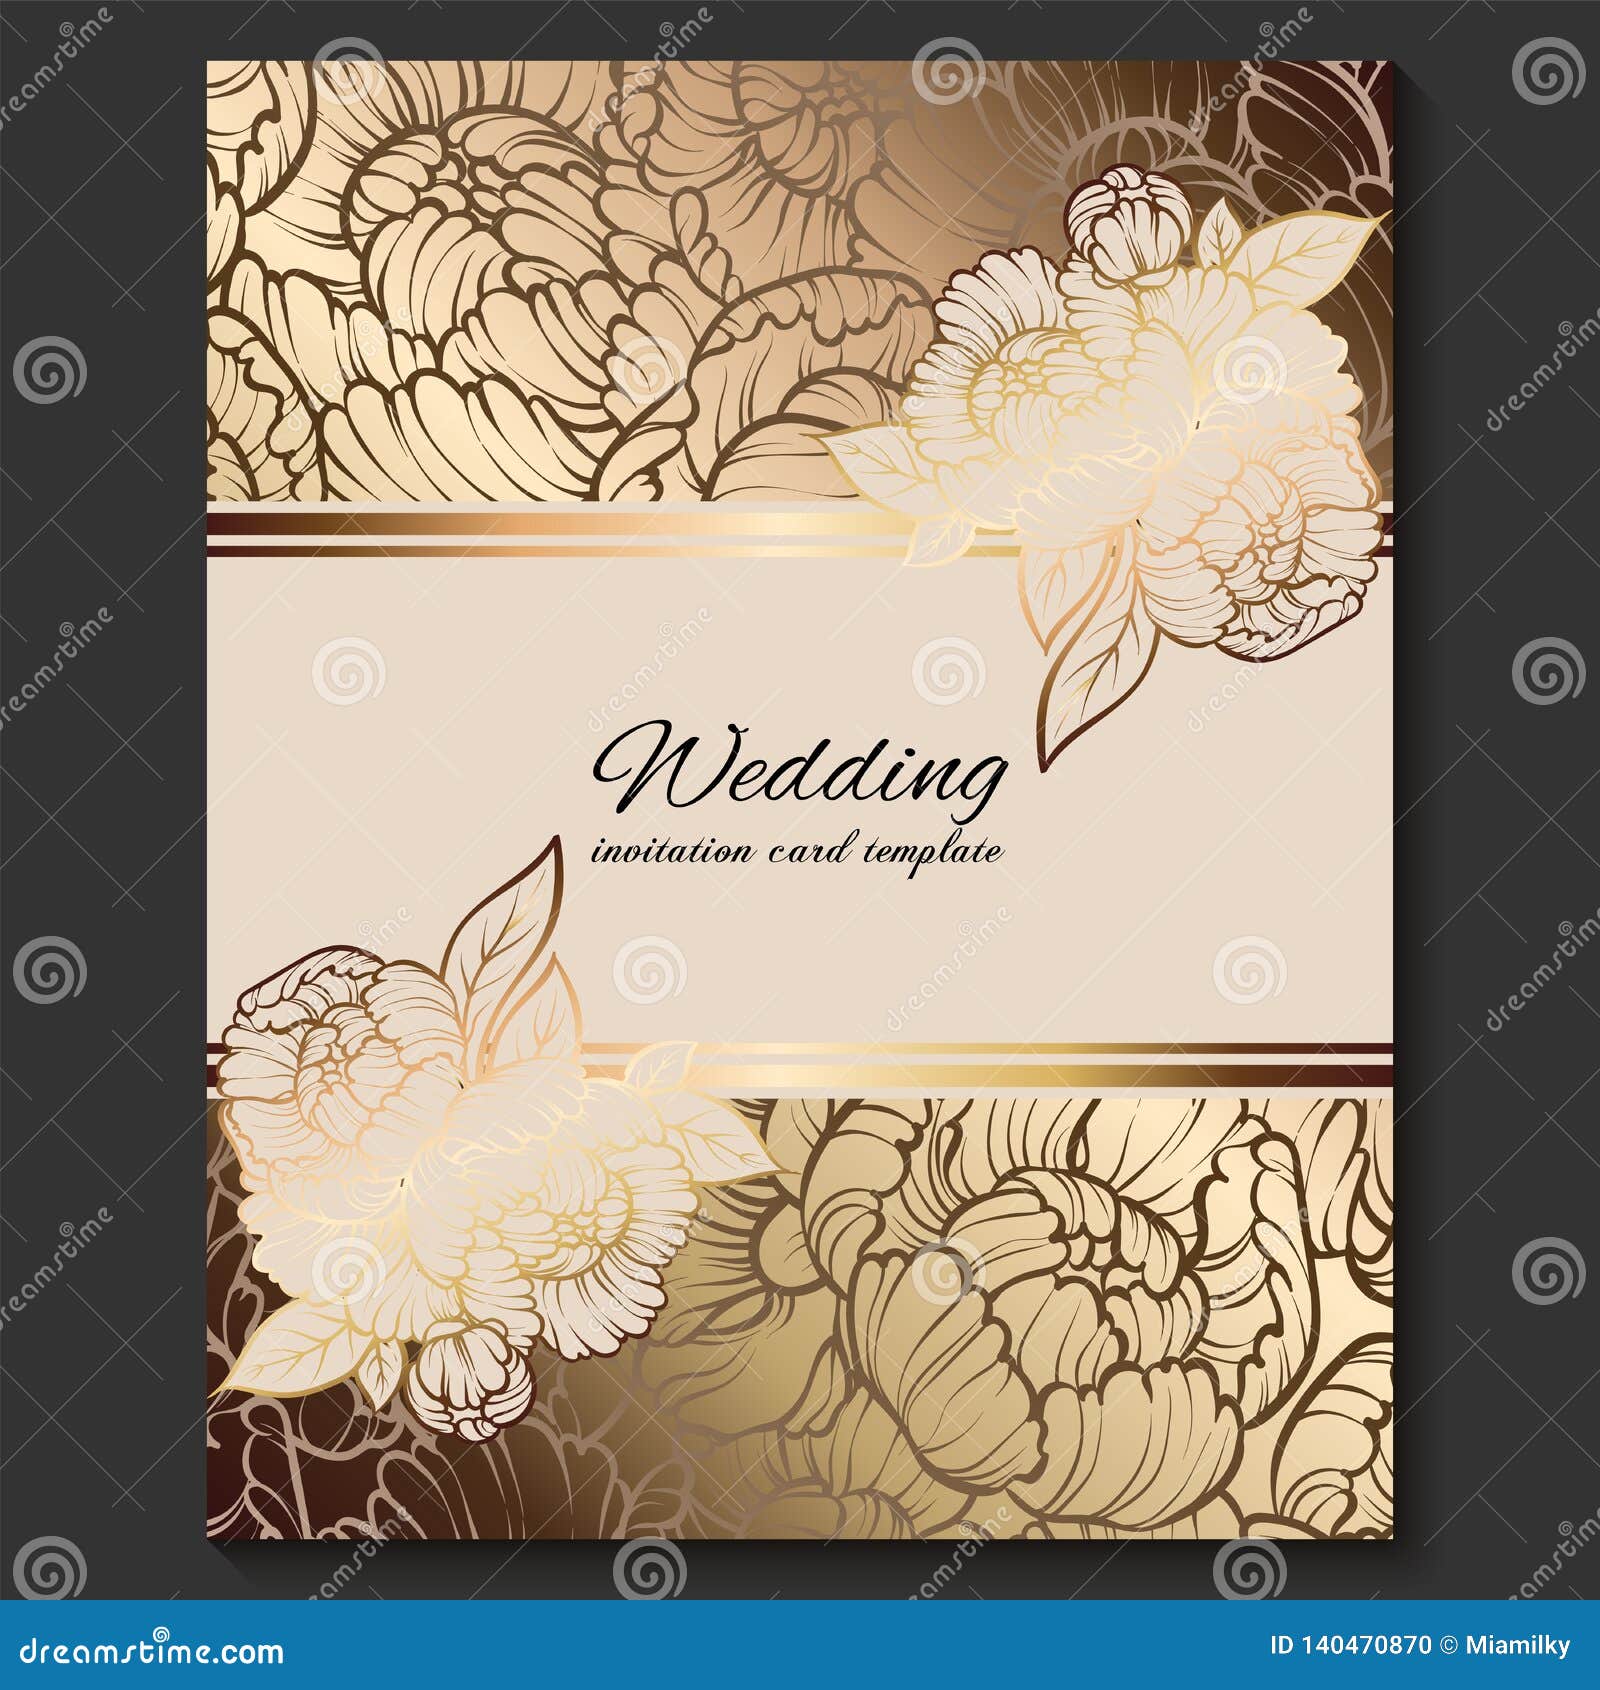 Bạn đang tìm kiếm một thiệp cưới độc đáo và sang trọng để gửi tới khách mời của mình? Hãy thử xem hình ảnh của chúng tôi về thiệp cưới cổ điển sang trọng, màu vàng trên nền beige. Thiết kế độc đáo và tinh tế, chắc chắn sẽ làm cho ngày cưới của bạn trở nên đặc biệt hơn.